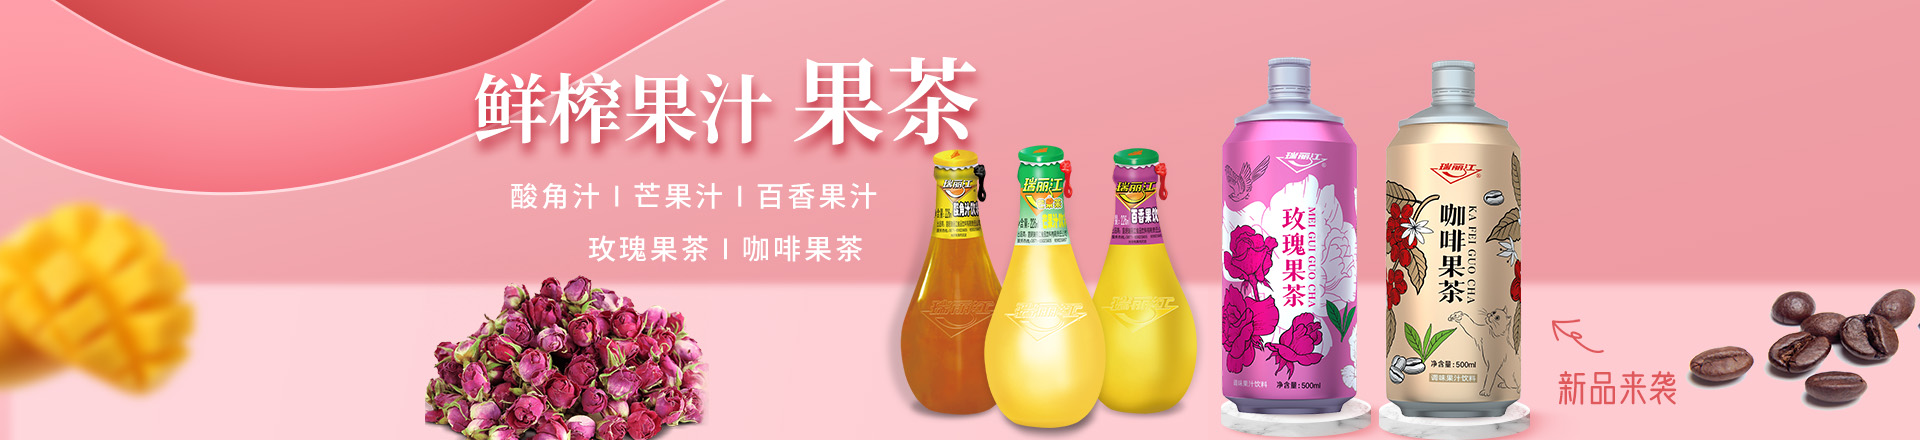 昆明瑞丽江食品饮料有限责任公司